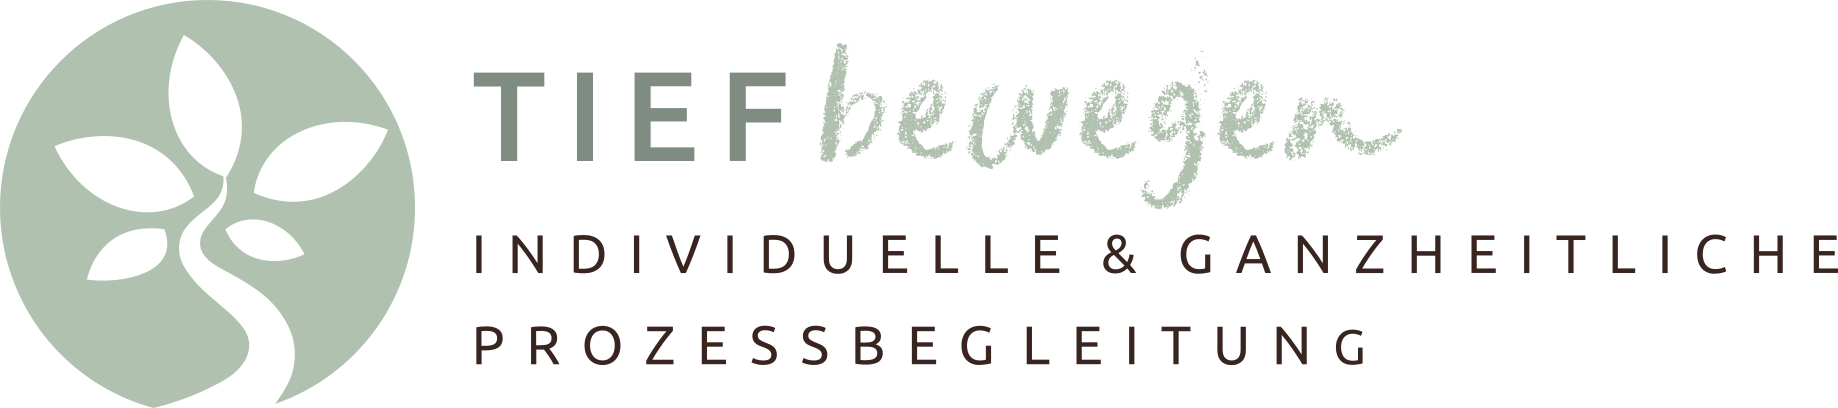 Logo TIEF bewegen - individuelle & ganzheitliche Prozessbegleitung Marion Miensopust